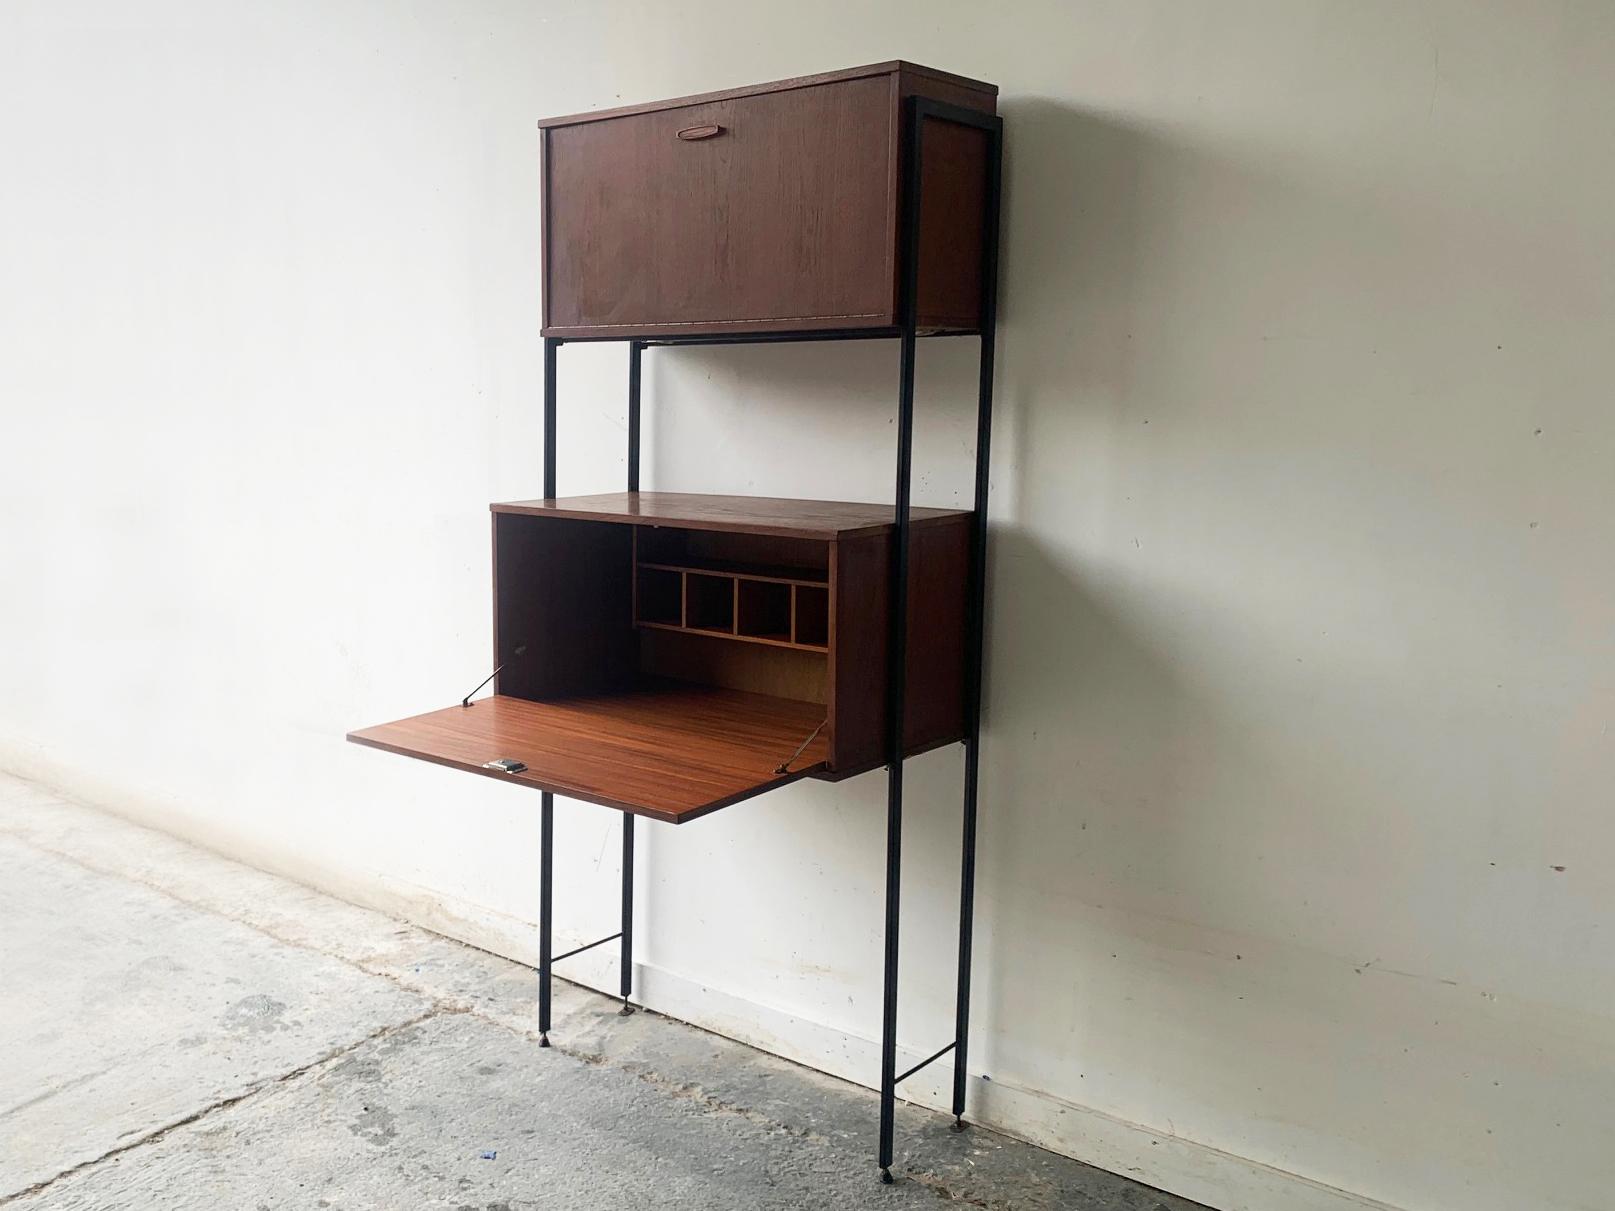 Une étagère/un meuble de rangement modulaire du milieu du siècle, fabriquée par Avalon, un fabricant respecté au Royaume-Uni.

Les armoires sont en teck et en placage de teck, avec leurs supports métalliques d'origine et leurs montants en métal